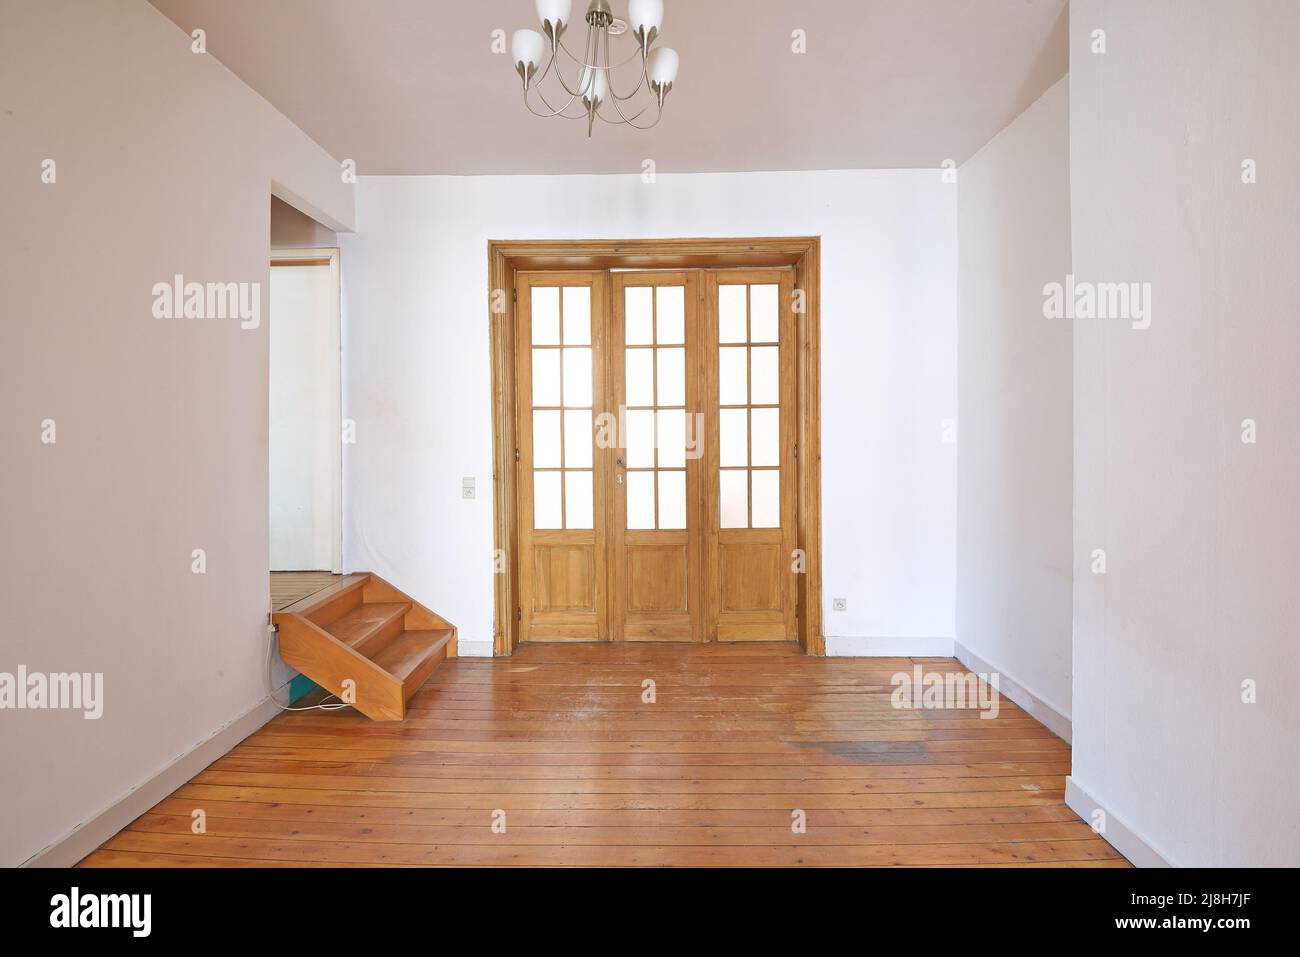 Innen gealterte Holztür mit Glasrahmen im leeren Raum Stockfoto